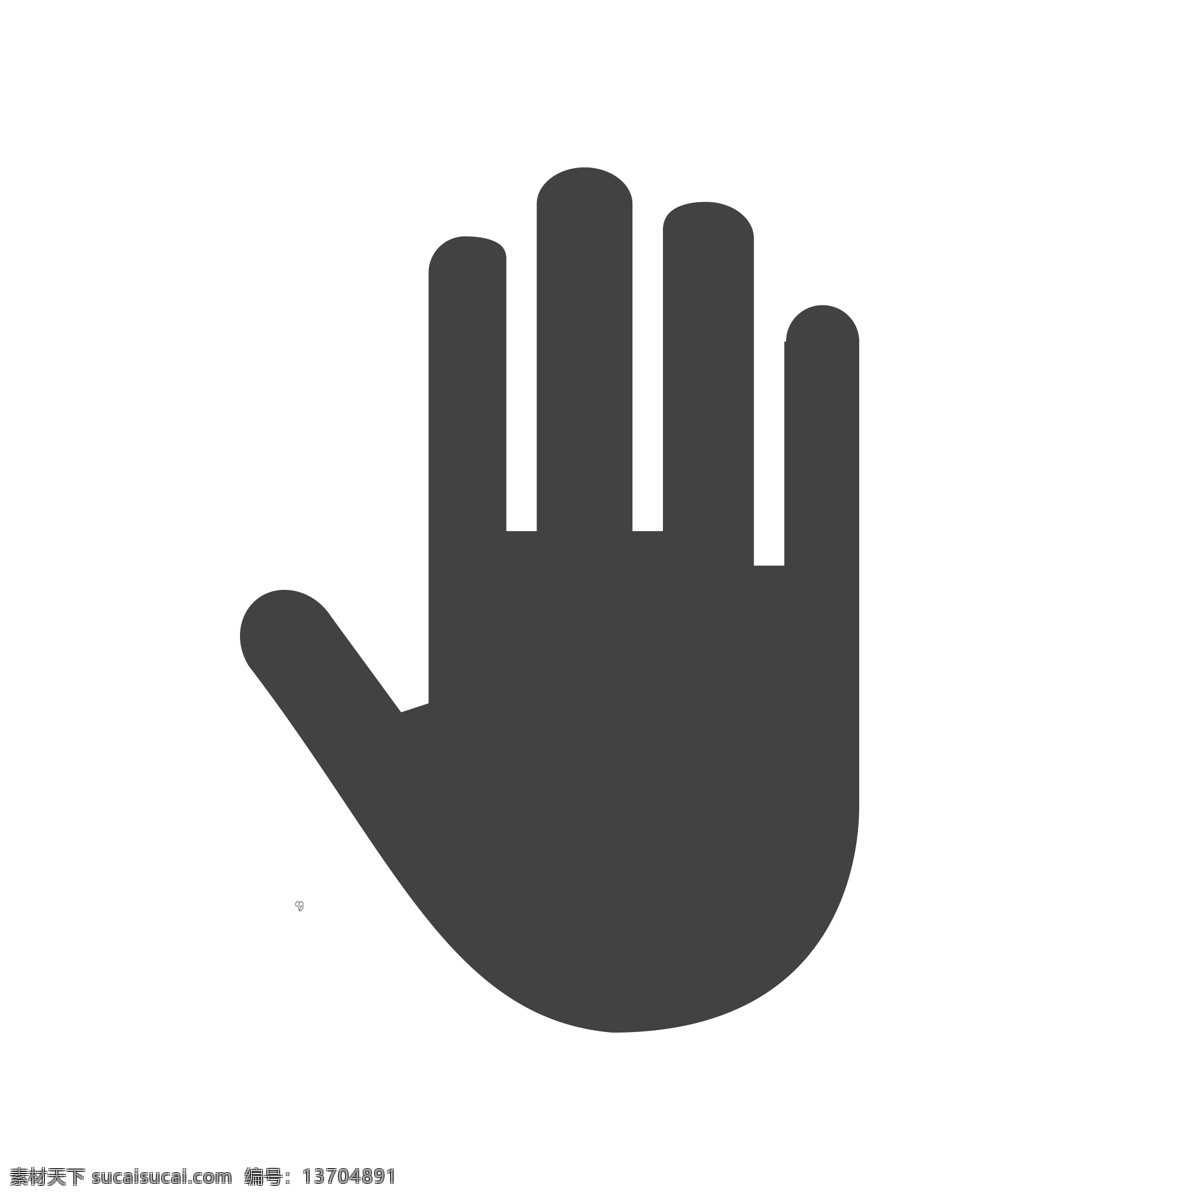 手势图标 卡通手势 扁平化ui ui图标 手机图标 界面ui 网页ui h5图标